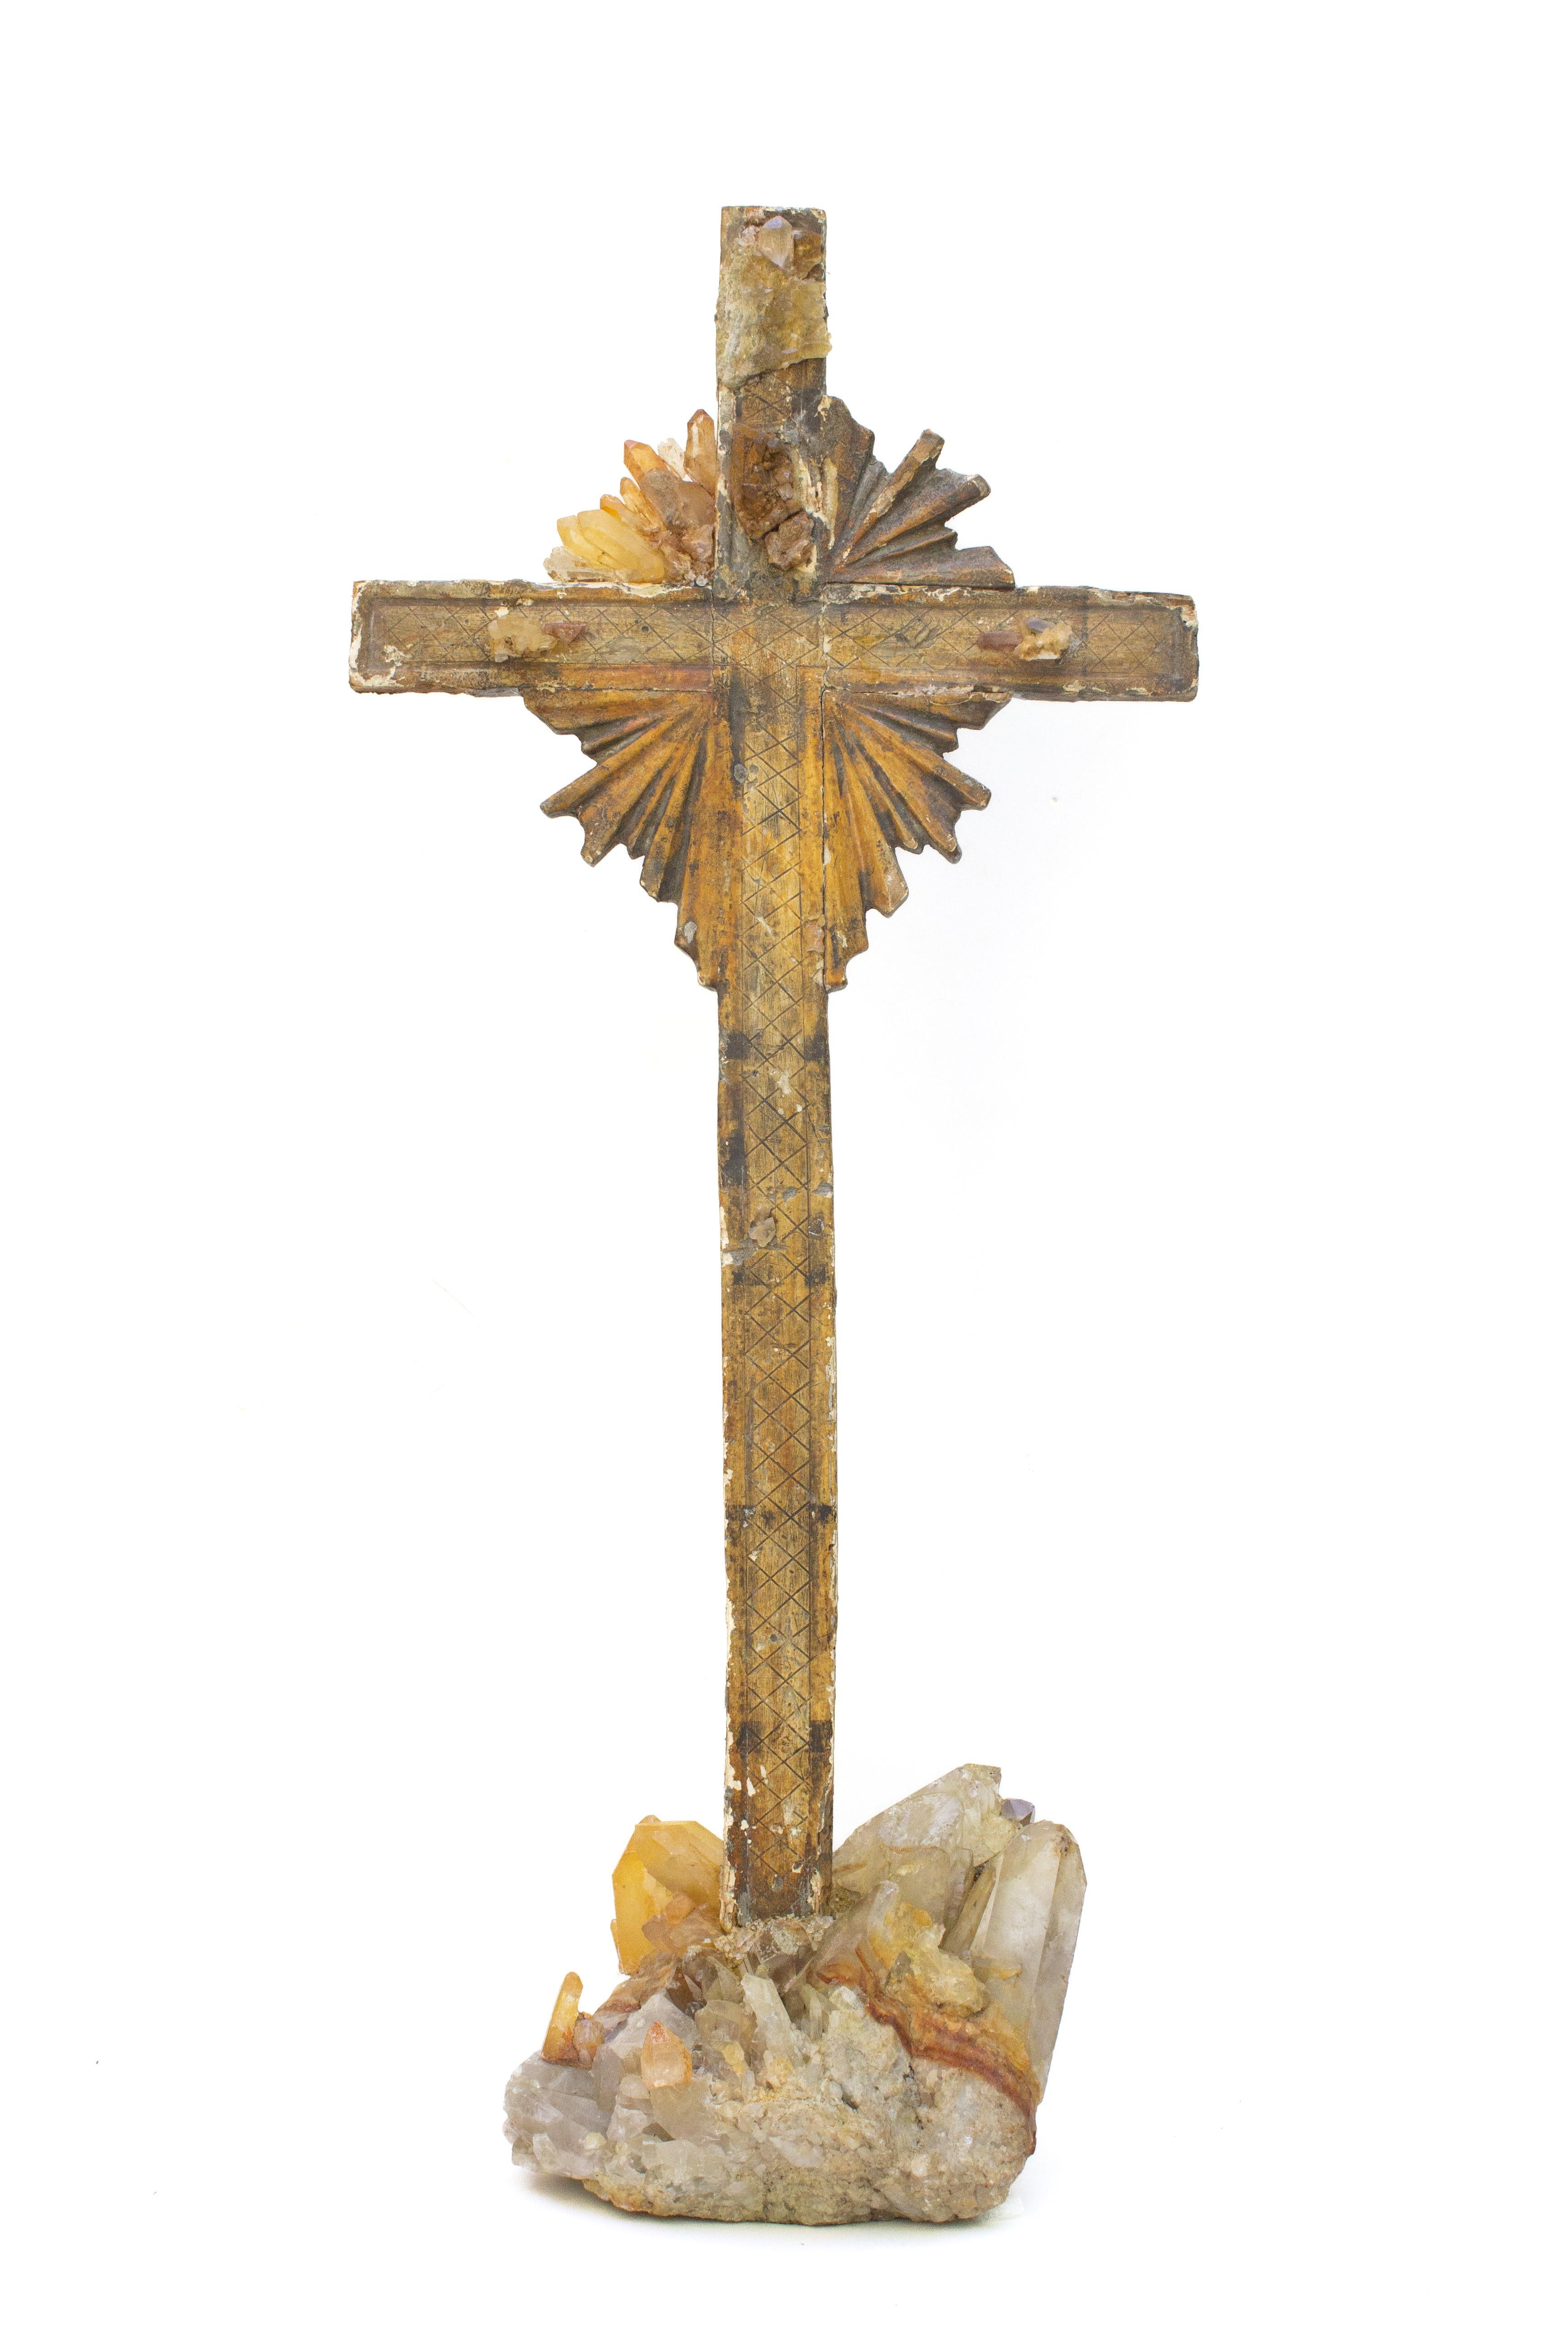 Italienisches Kreuz aus dem 18. Jahrhundert mit Mandarinenquarz-Kristallen auf einem Sockel mit Mandarinenquarz und Kristallcluster. Das Kruzifix stammt ursprünglich aus einer Kirche in der Toskana. Die Kristallquarzspitzen bilden die ursprünglichen